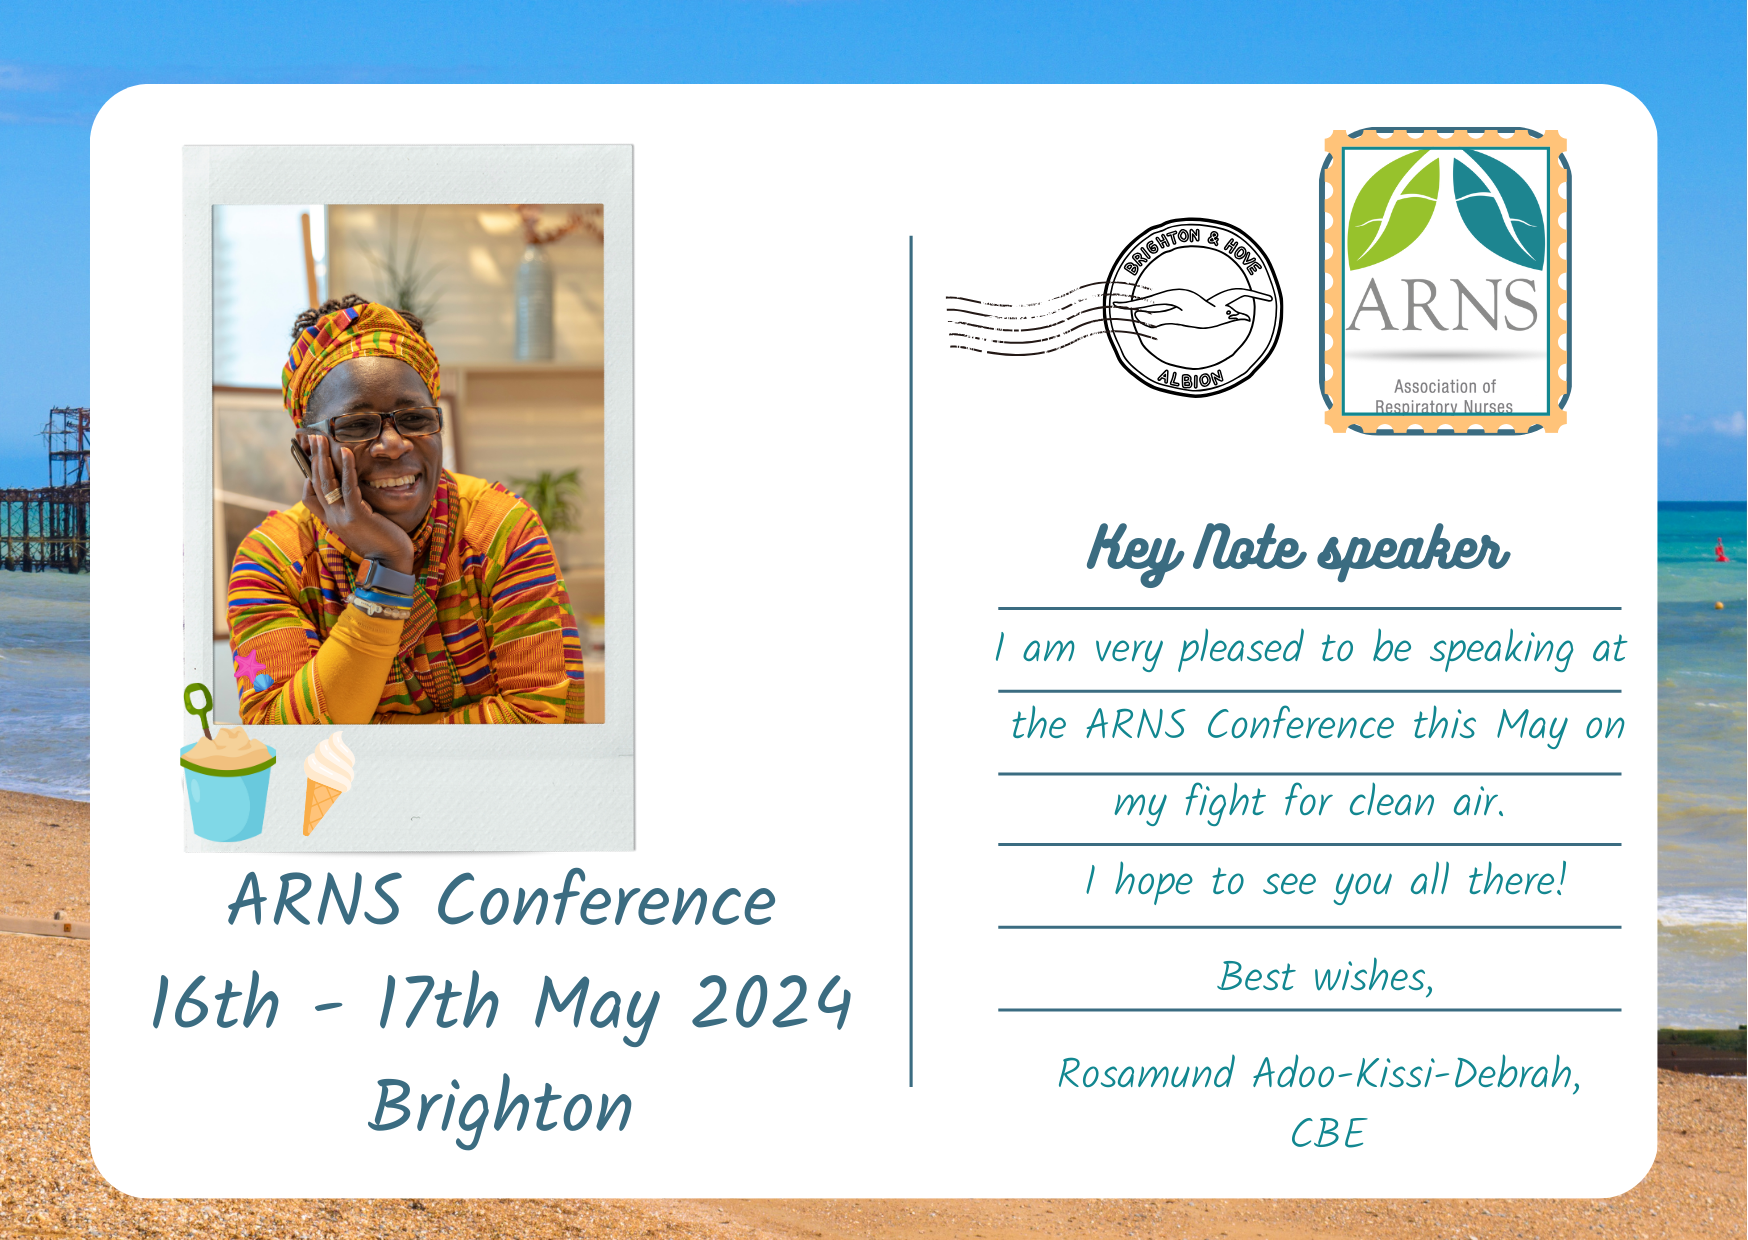 ARNS RKD keynote speaker Postcard Conference 2024 (3)